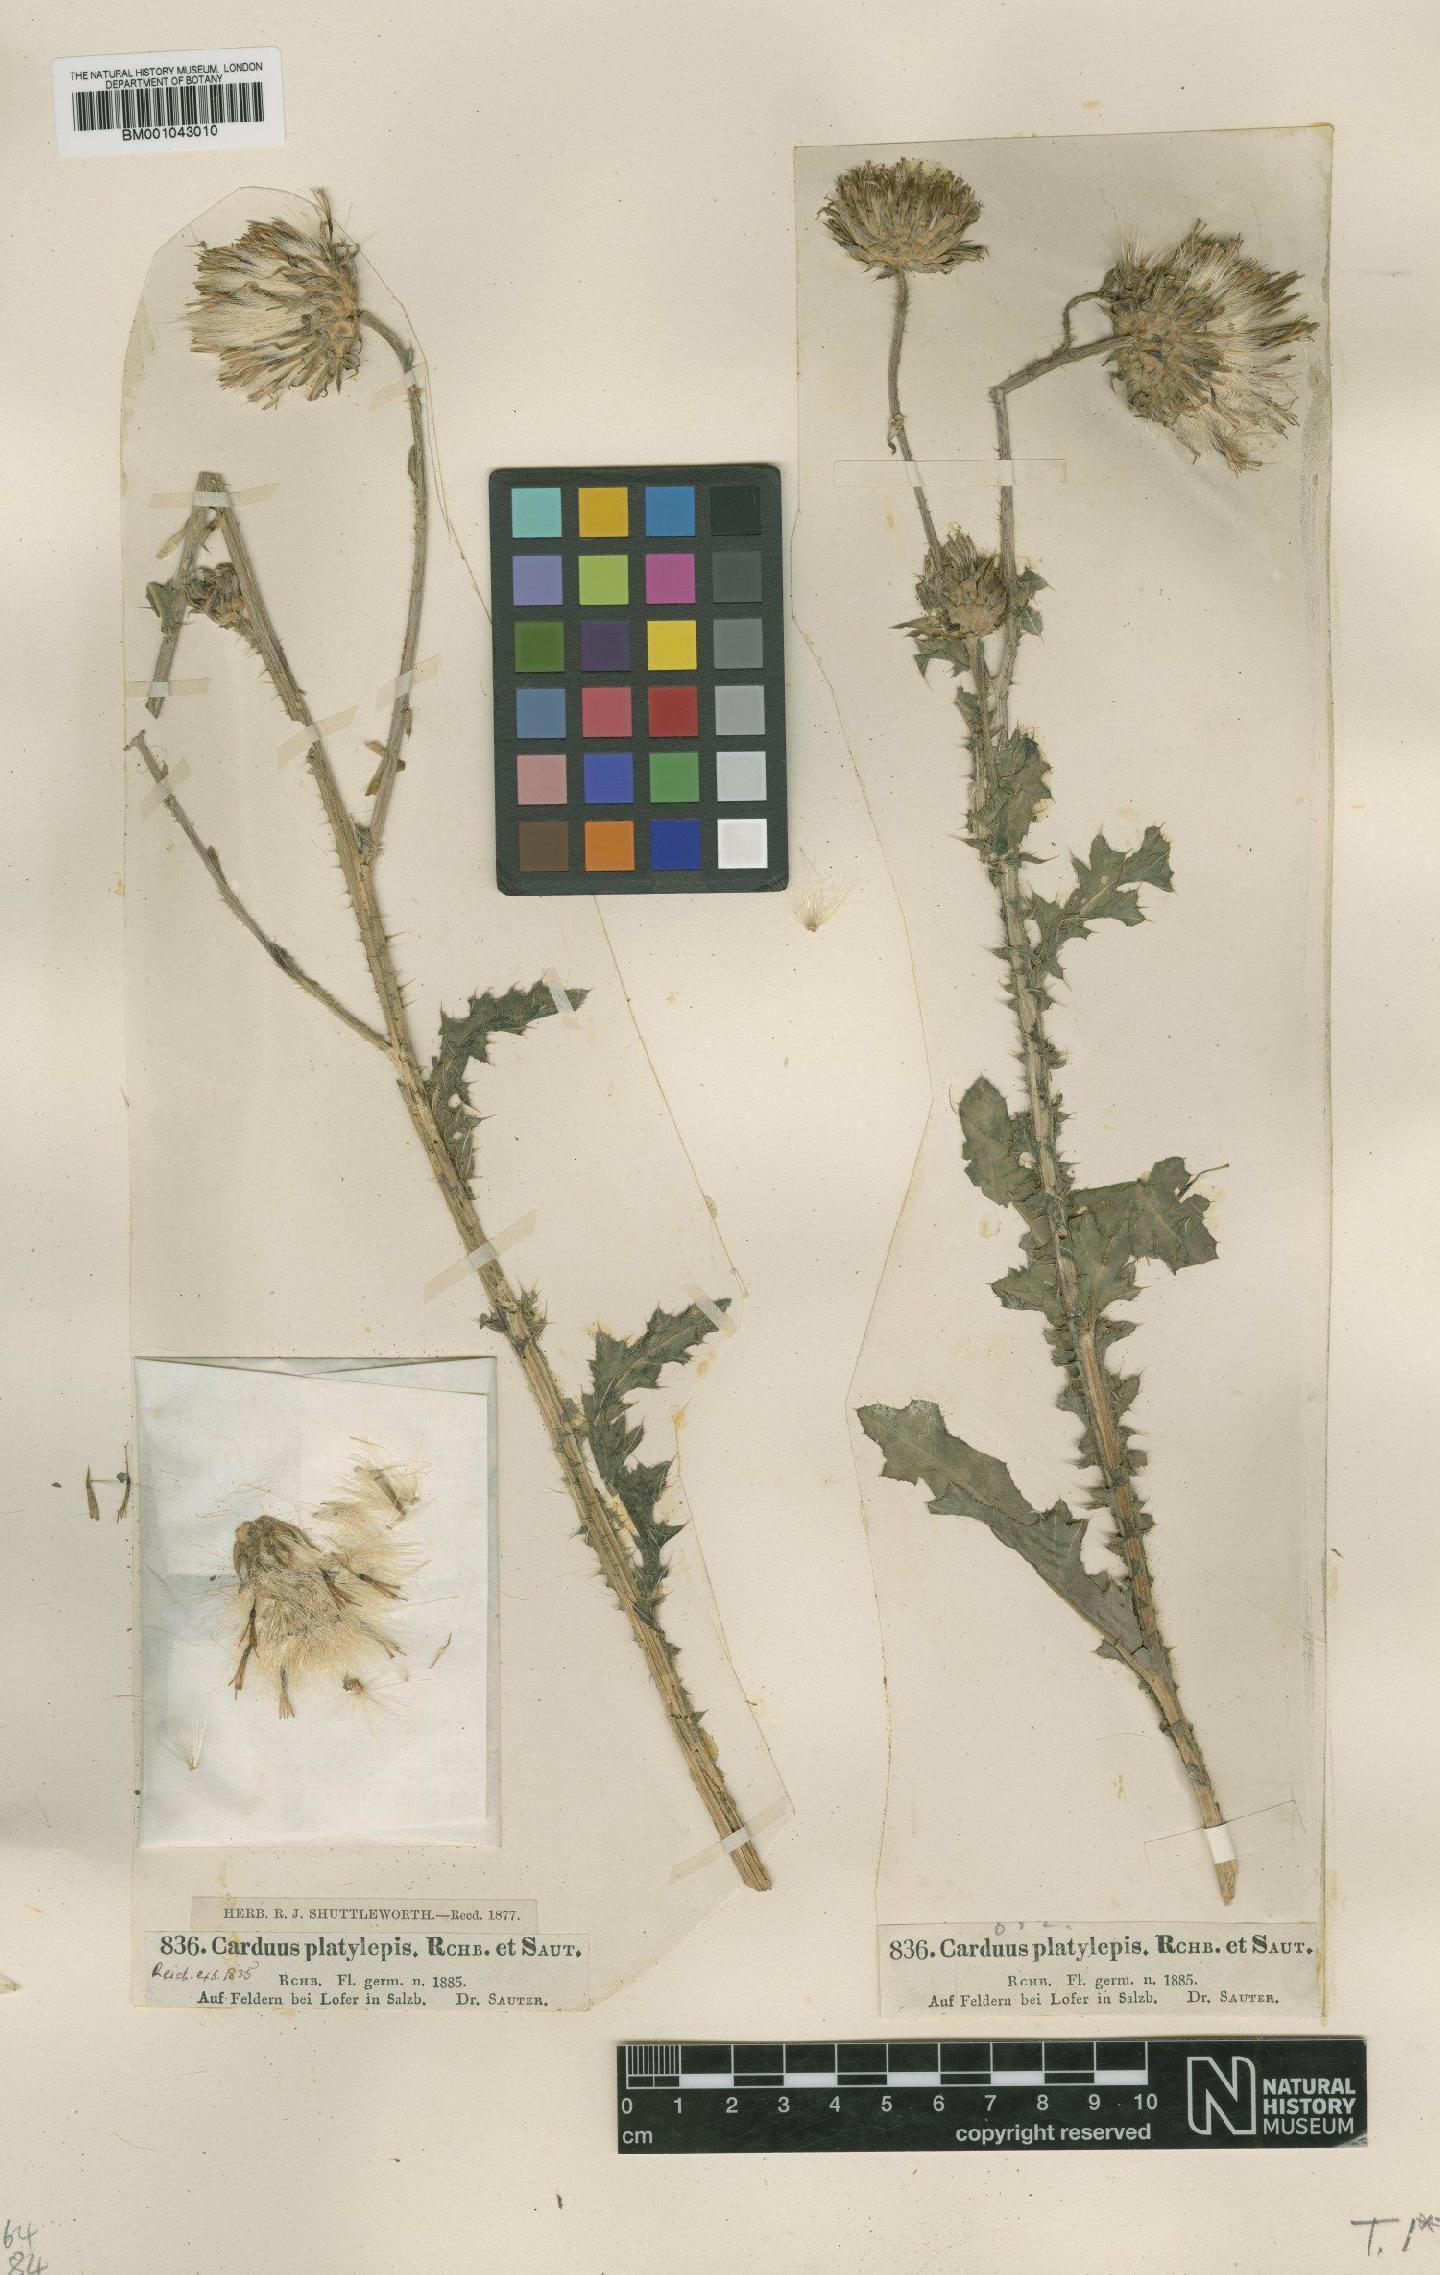 To NHMUK collection (Carduus nutans subsp. platylepis Rchb. & Saut.; Type; NHMUK:ecatalogue:1954388)